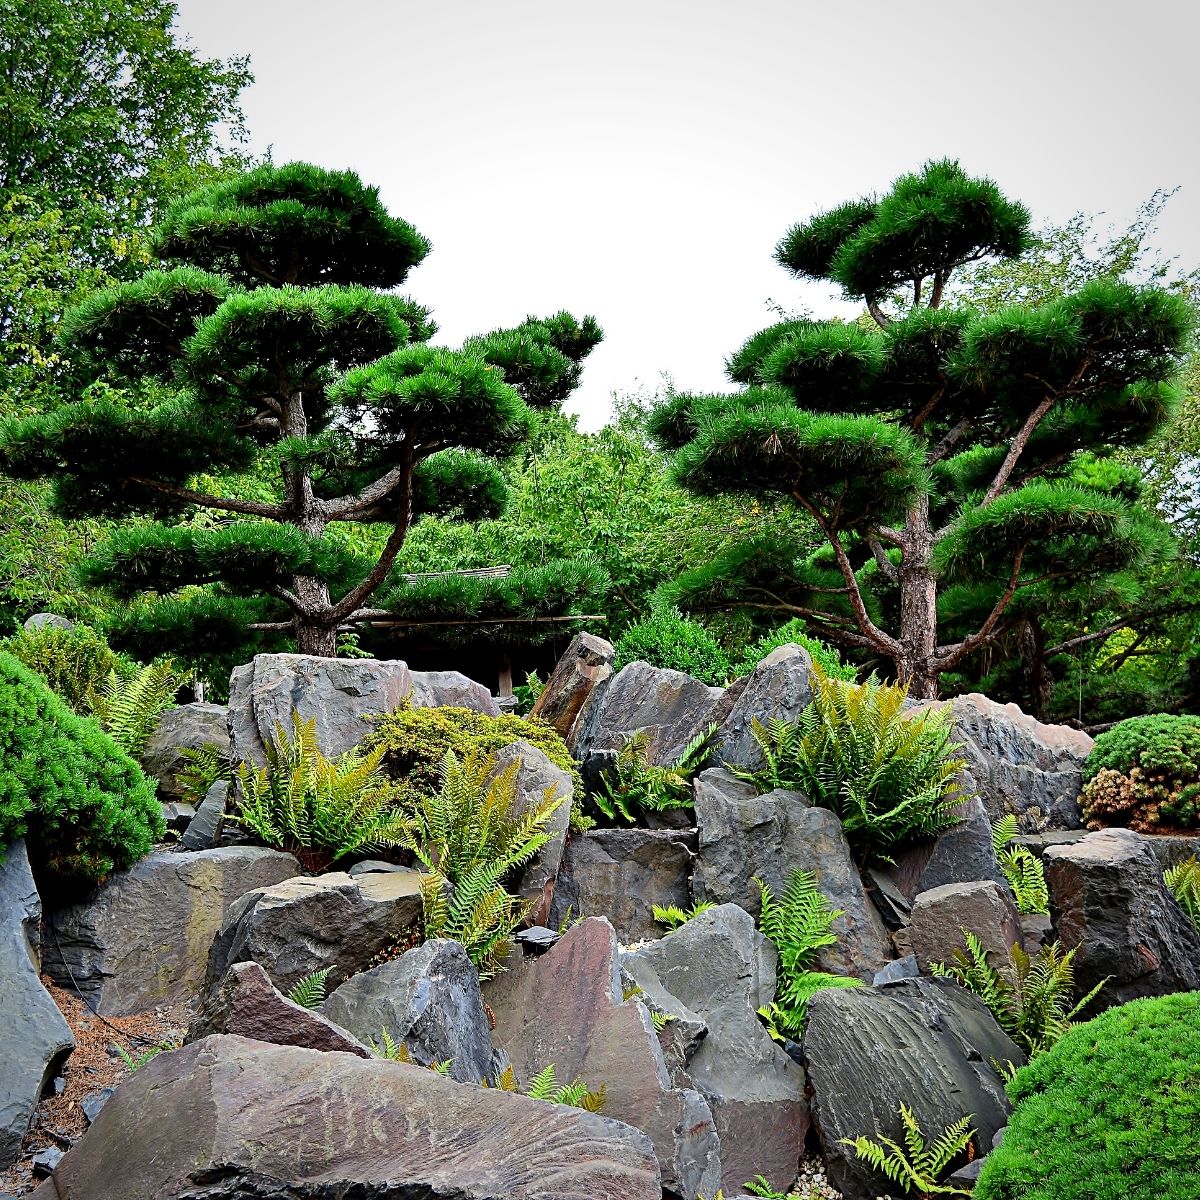 A rock garden